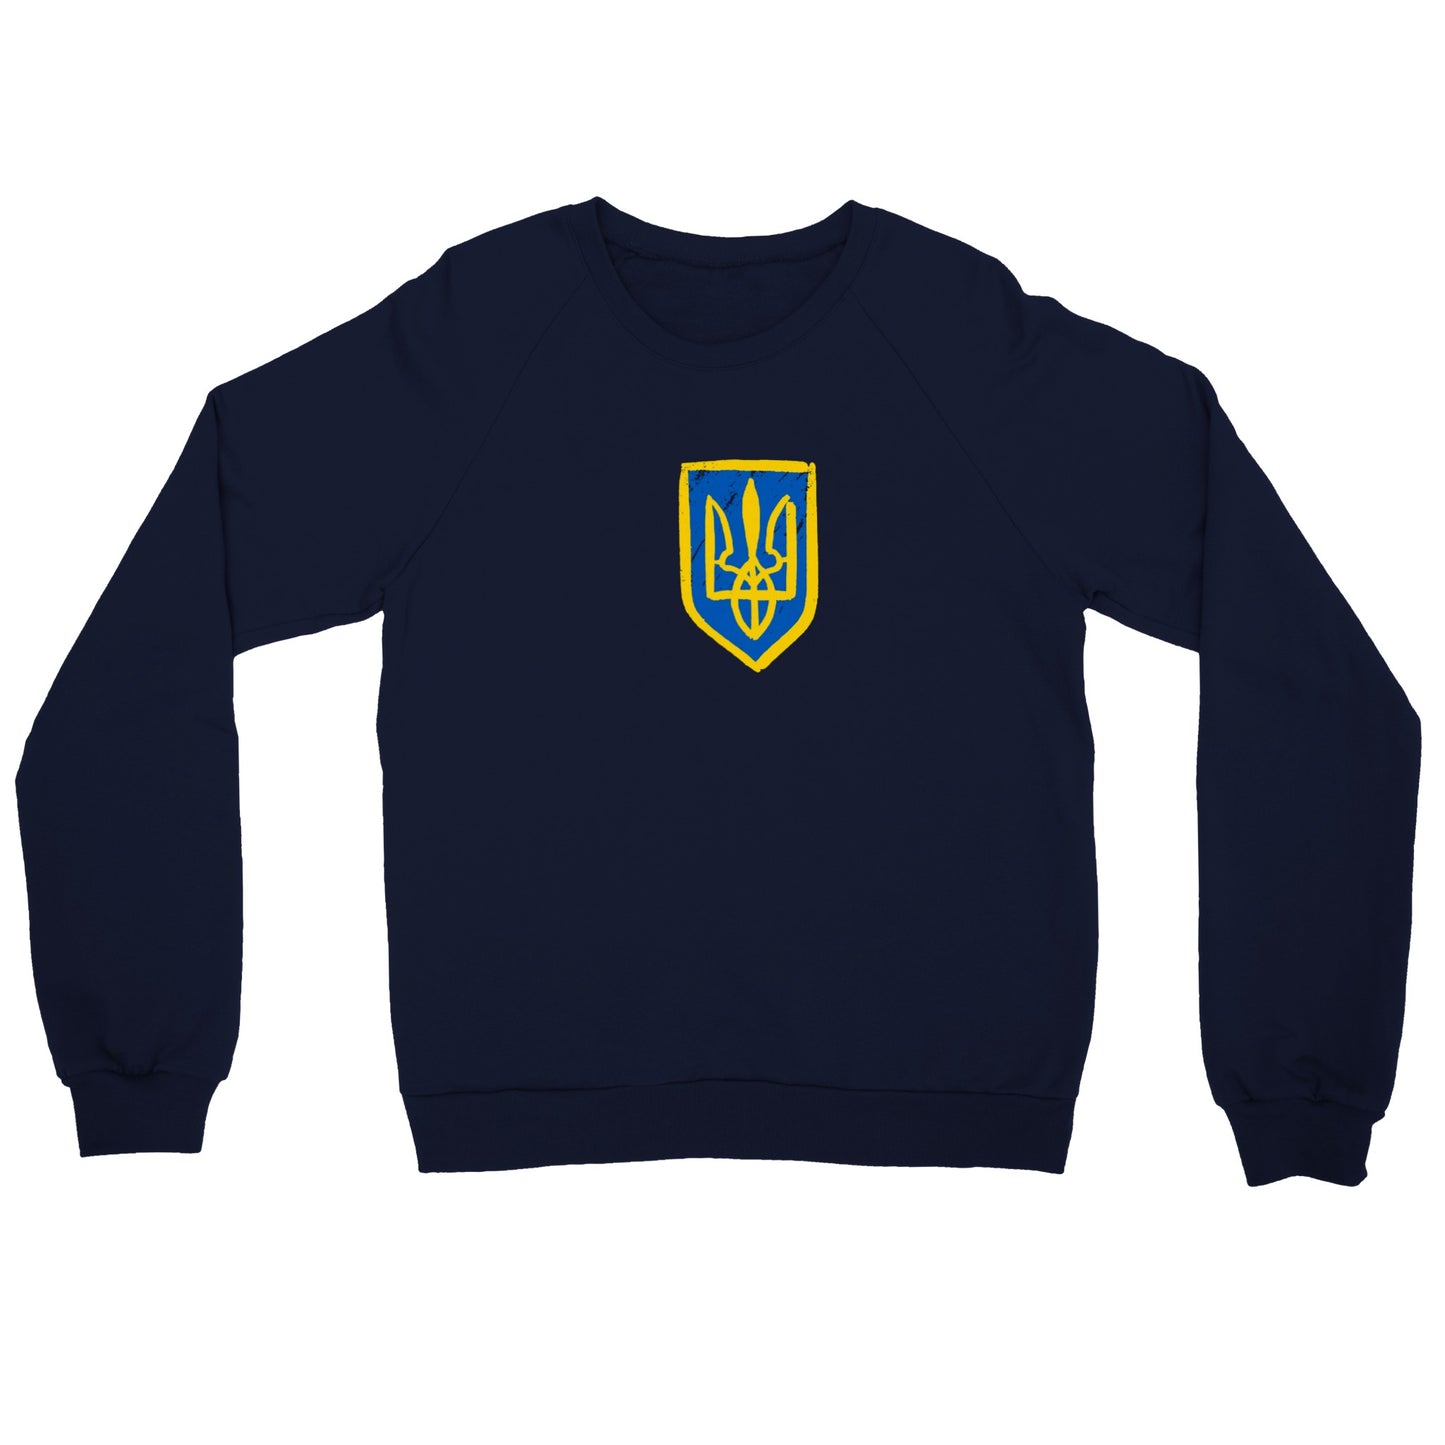 Premium Unisex Crewneck Sweatshirt "Trident"